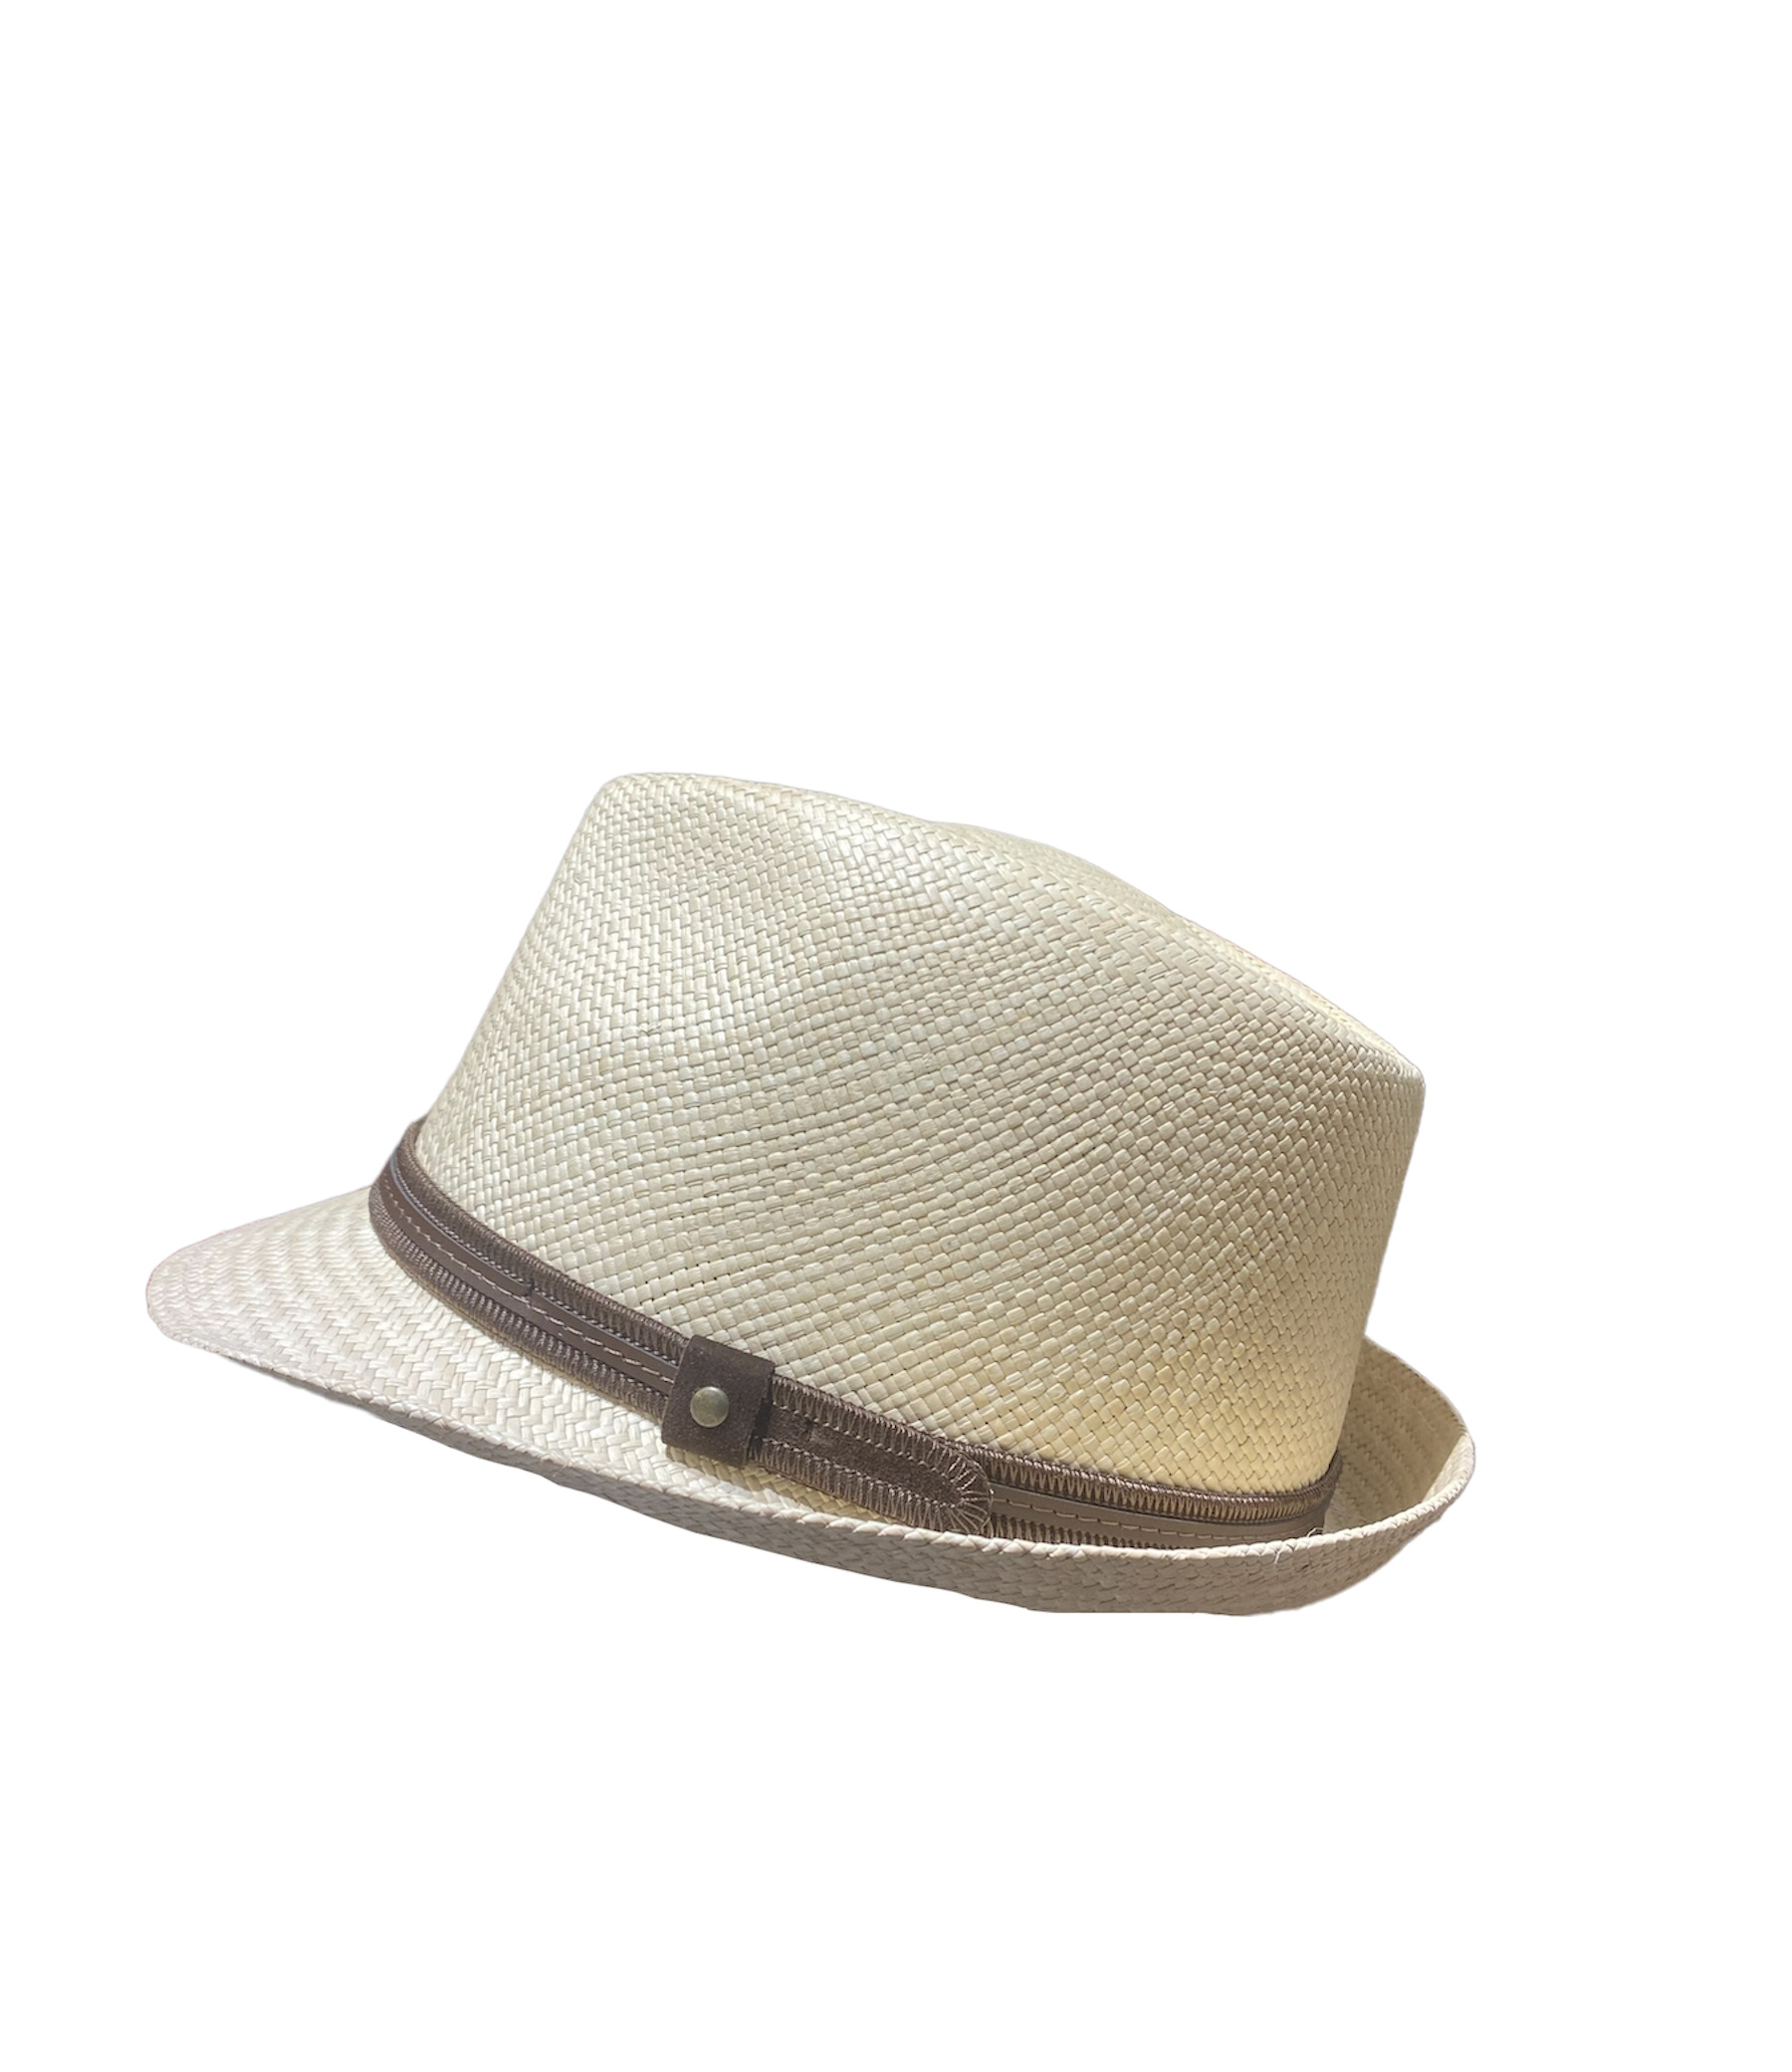 Chapeau Panama Bao Hats avec ganse marron, disponible en taille 57, 59, 61 et 63